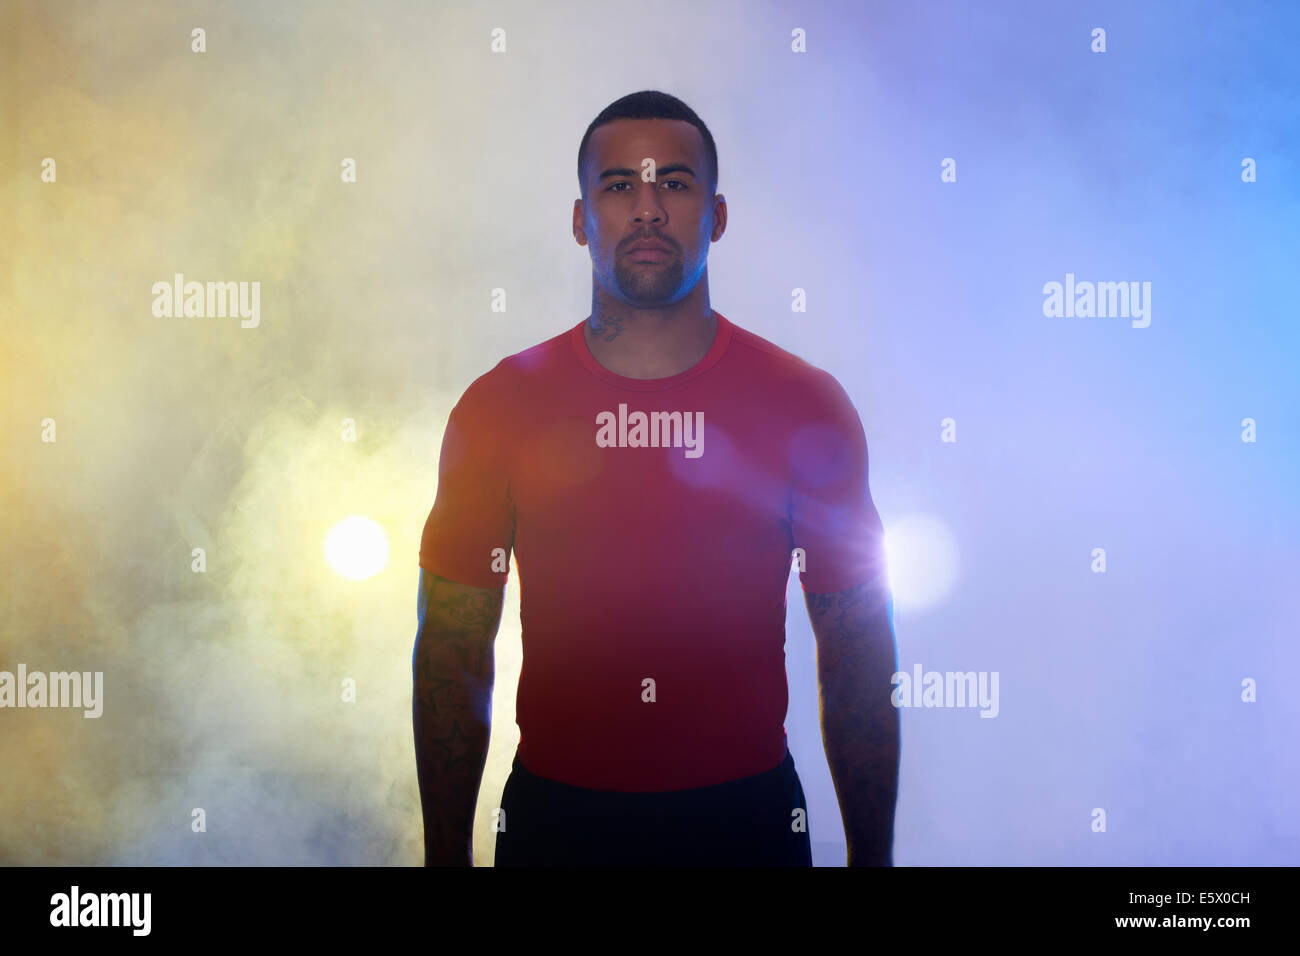 Studio-Porträt der muskulöse junge Sportler in Strahlern und Nebel Stockfoto